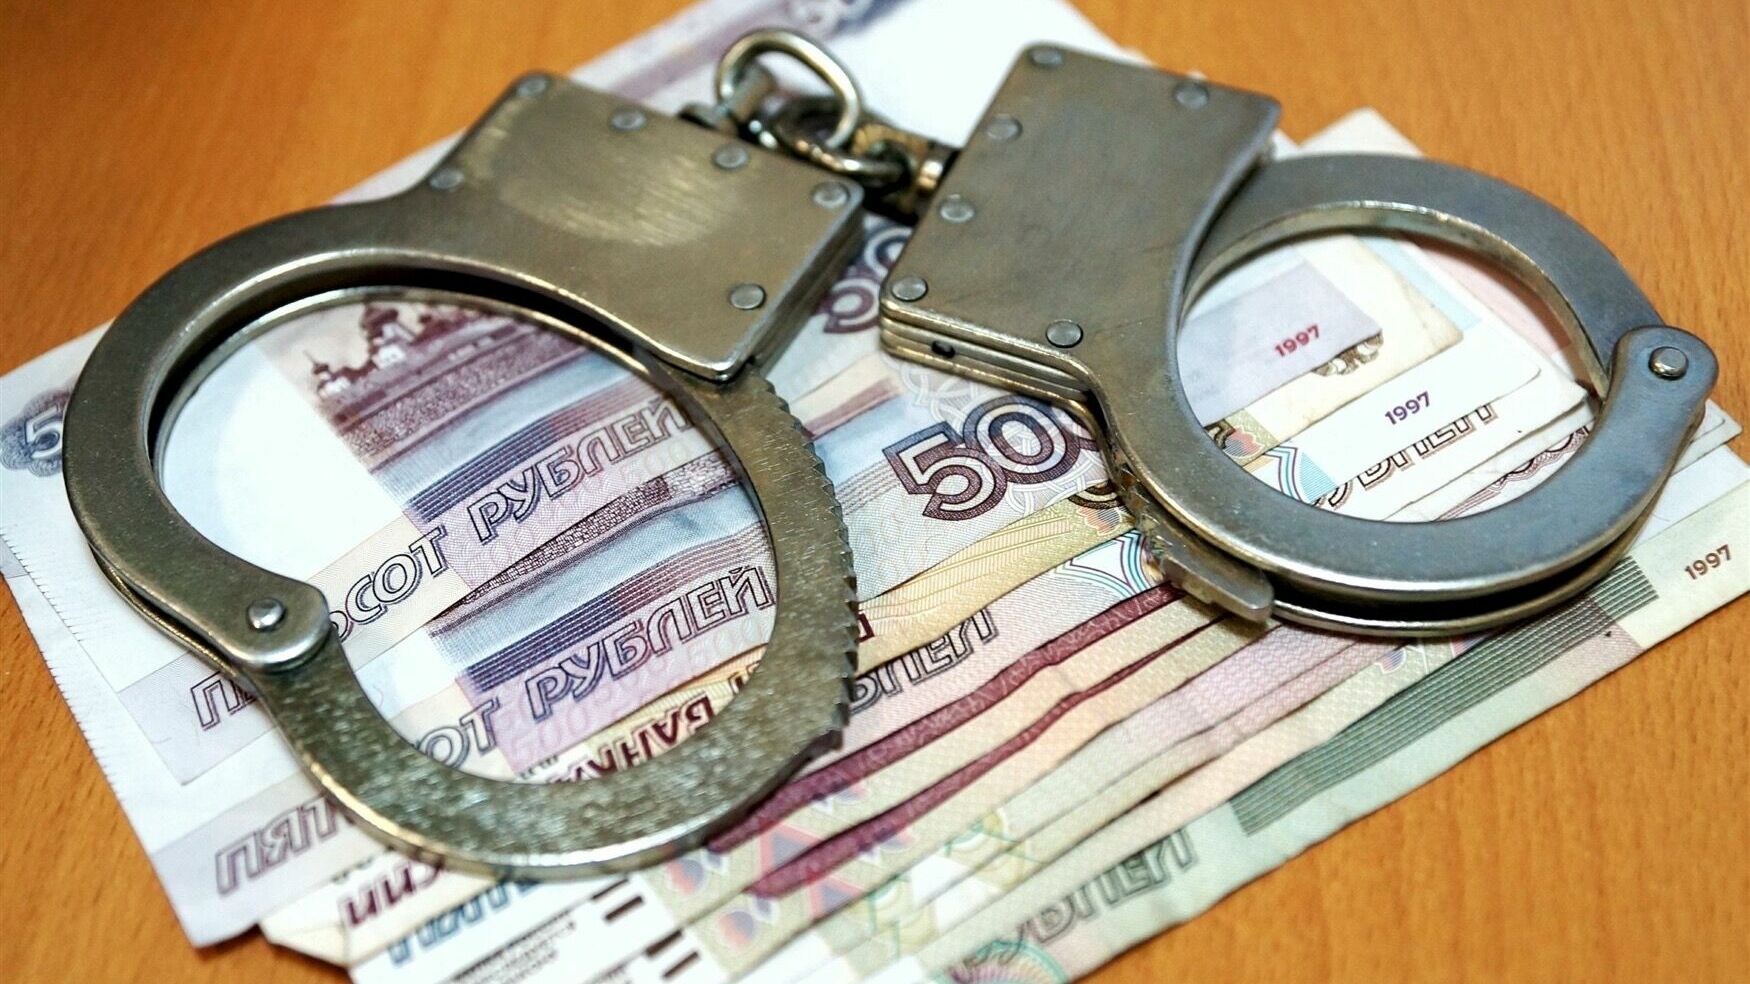 ТПП просит отменить уголовную ответственность за мошенничество до 5 тыс. рублей